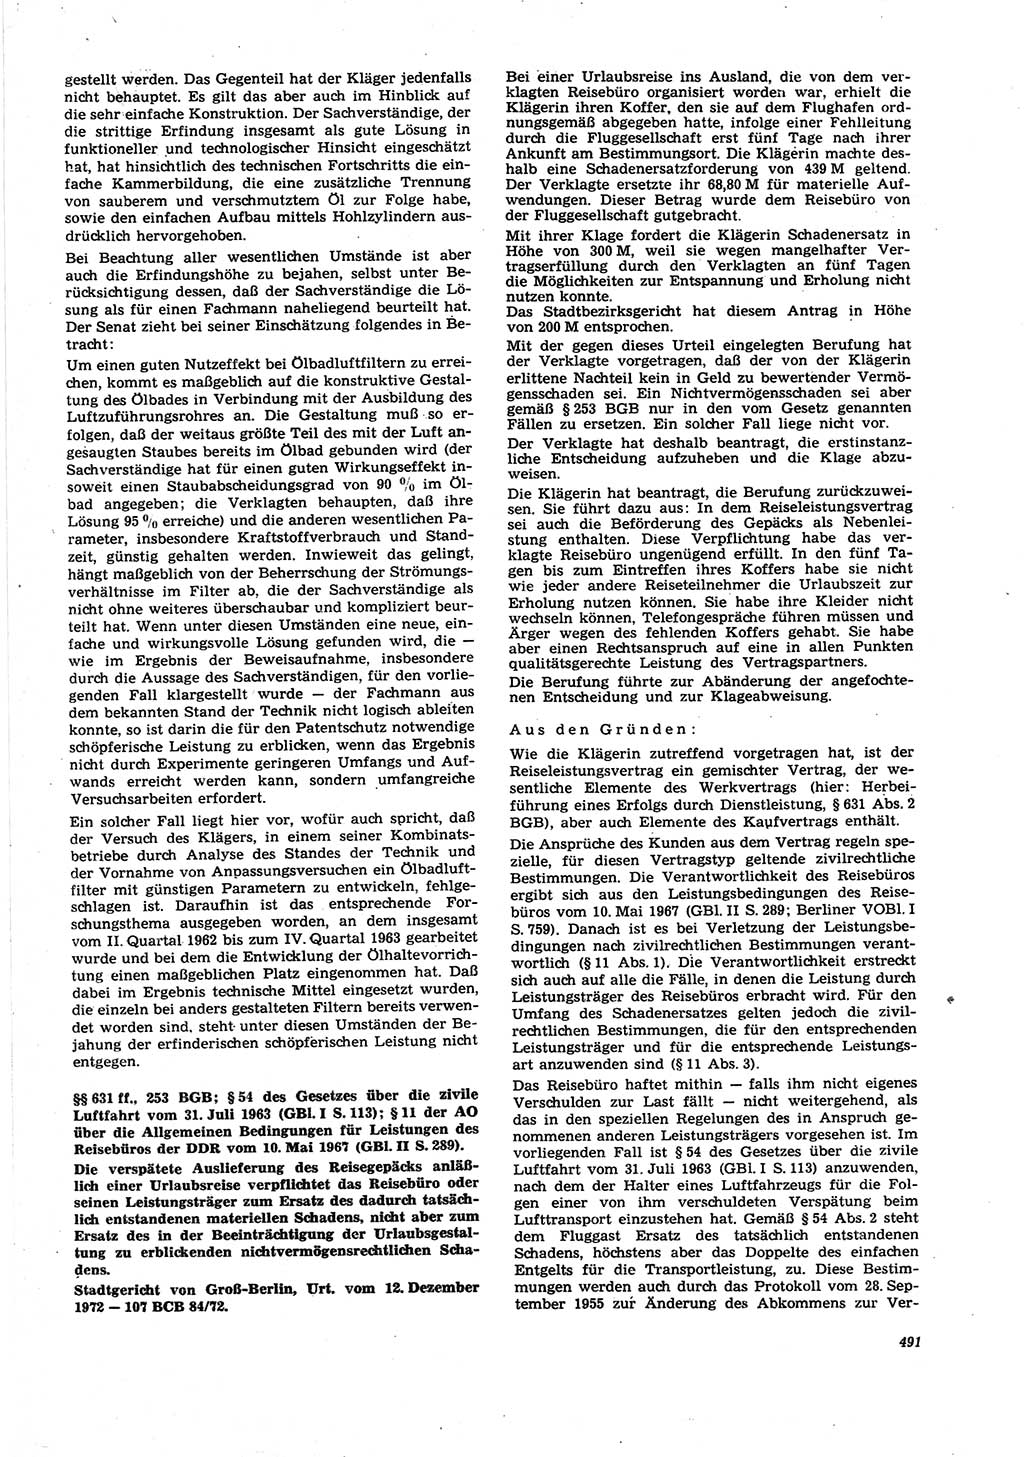 Neue Justiz (NJ), Zeitschrift für Recht und Rechtswissenschaft [Deutsche Demokratische Republik (DDR)], 27. Jahrgang 1973, Seite 491 (NJ DDR 1973, S. 491)